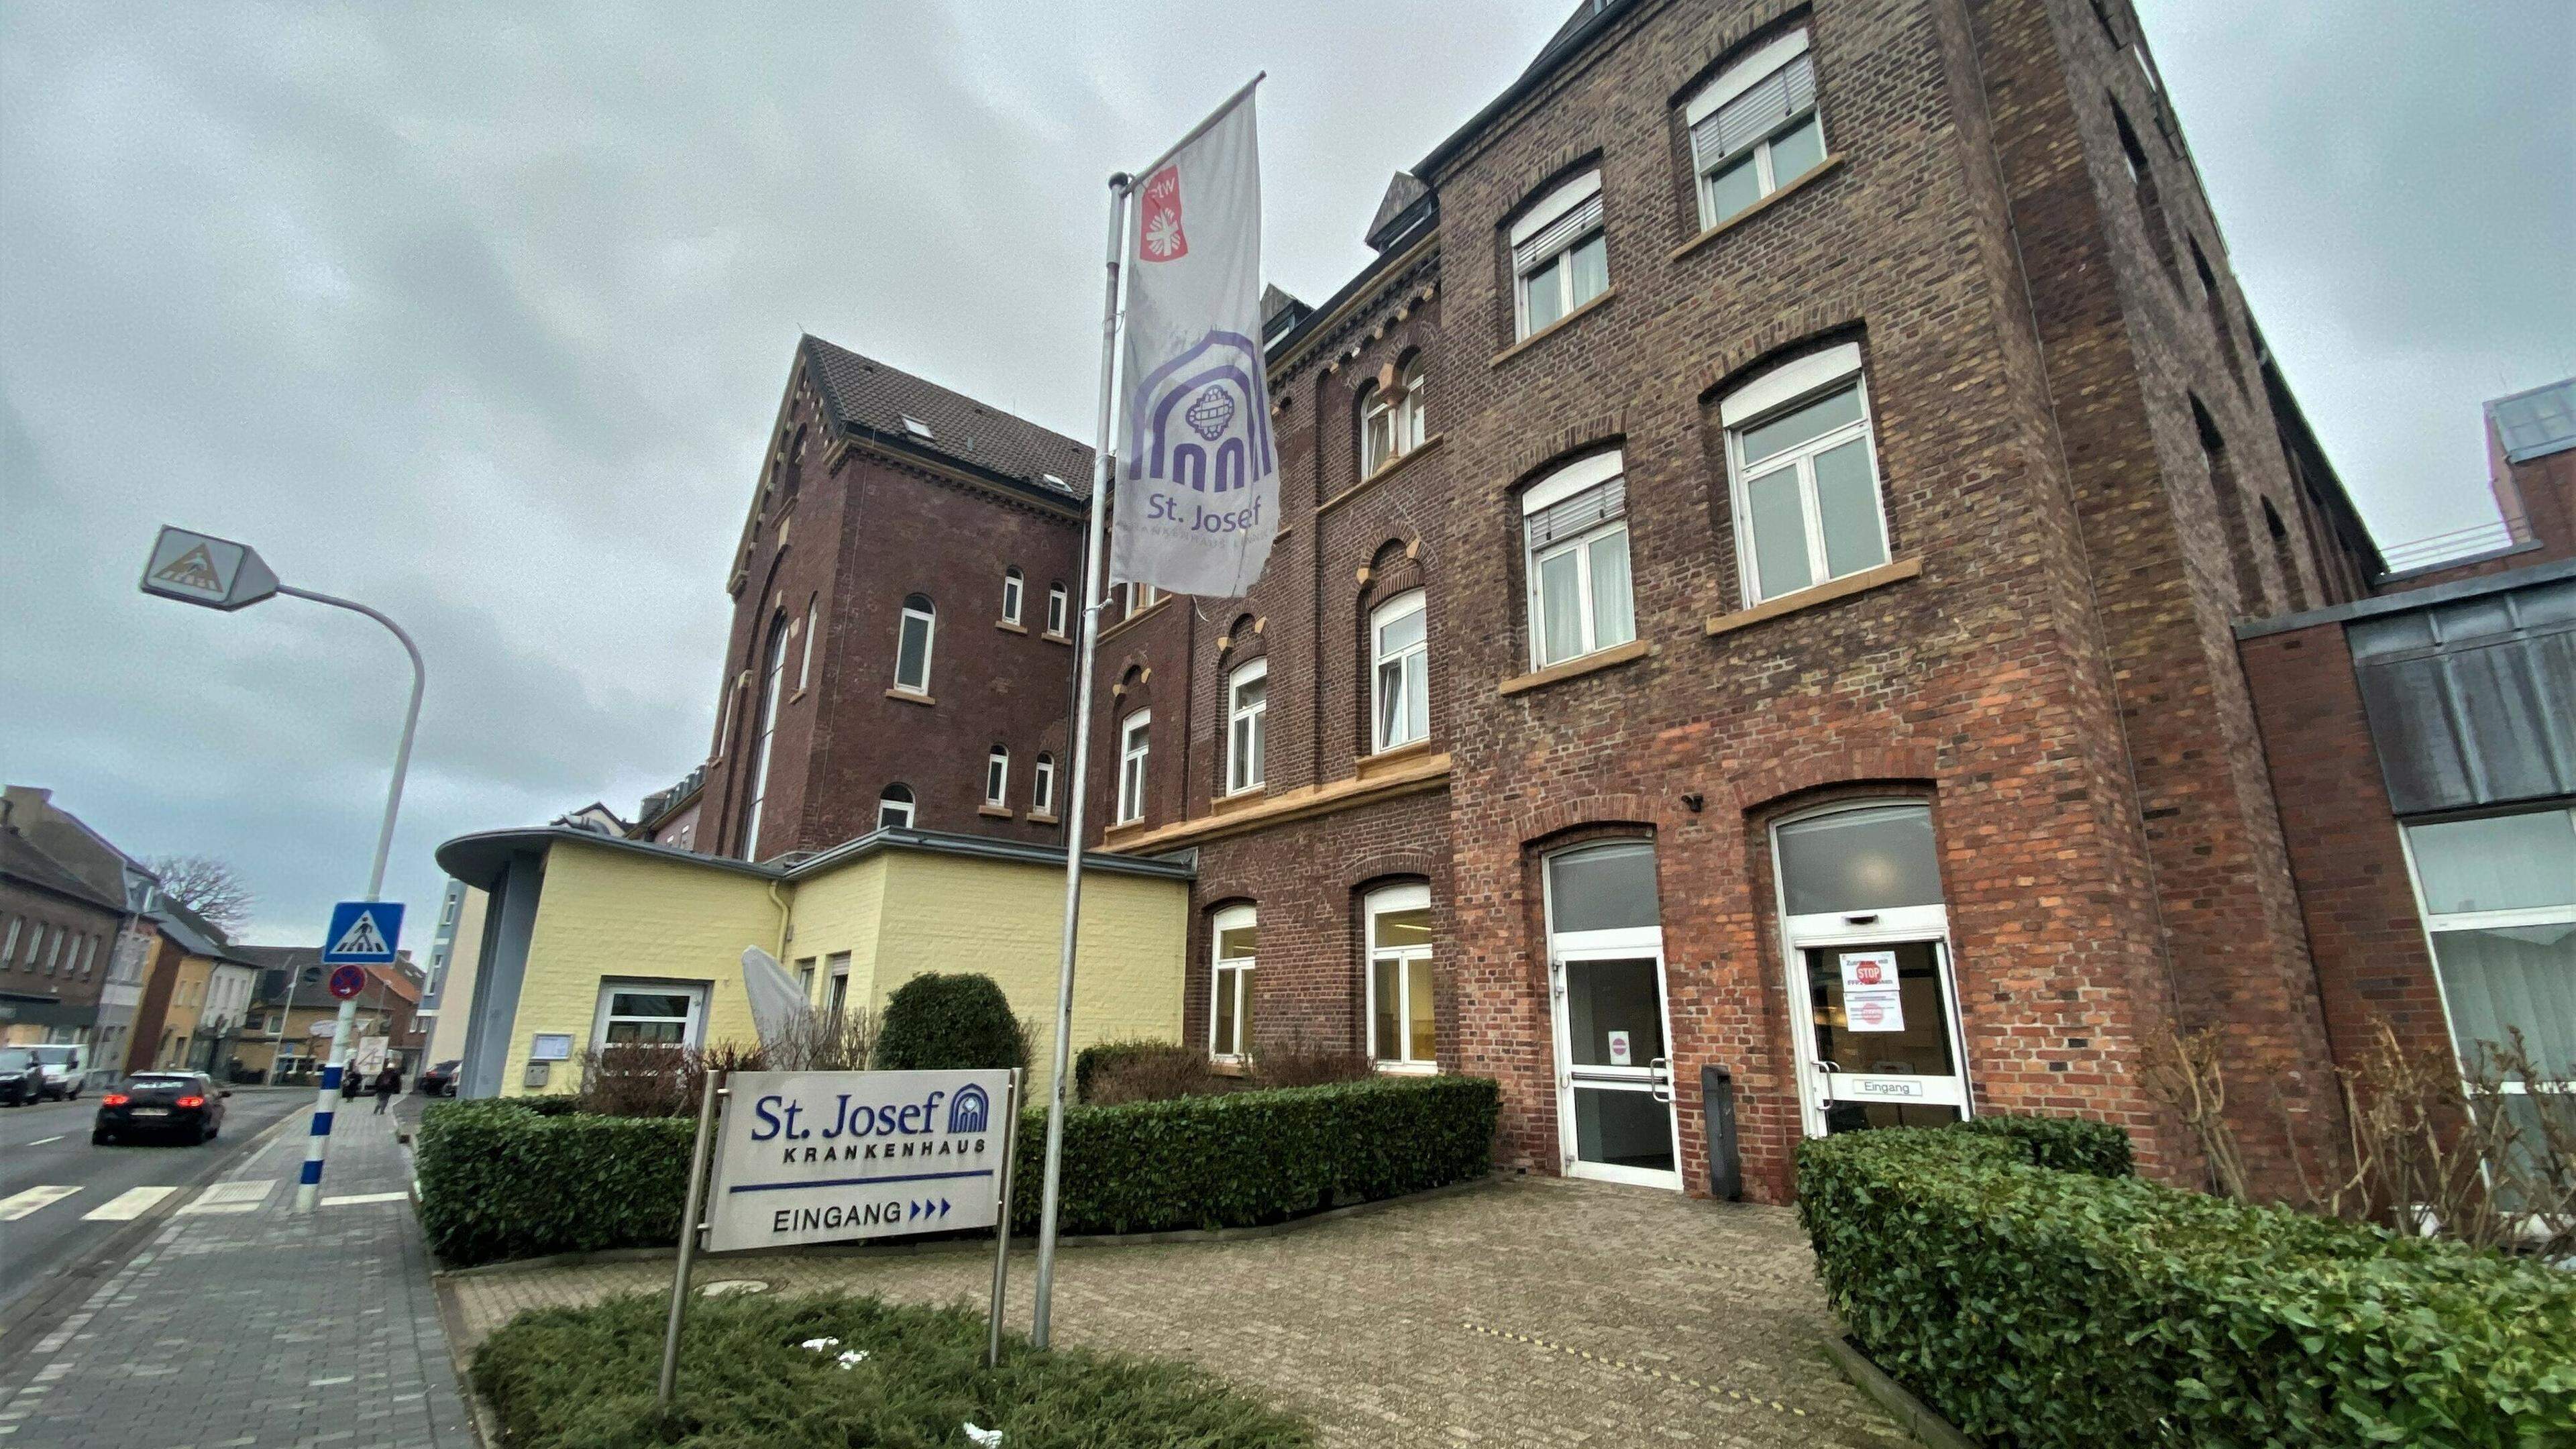 Das Linnicher St.-Josef-Krankenhaus ist im Rahmen des Sanierungsverfahrens der Nordkreis-Kliniken geschlossen worden. Die Stadt hatte rechtliche Schritte gegen die Schließung geprüft, strengt aber keine Klage an und bezeichnet das Verfahren als rechtskonform.